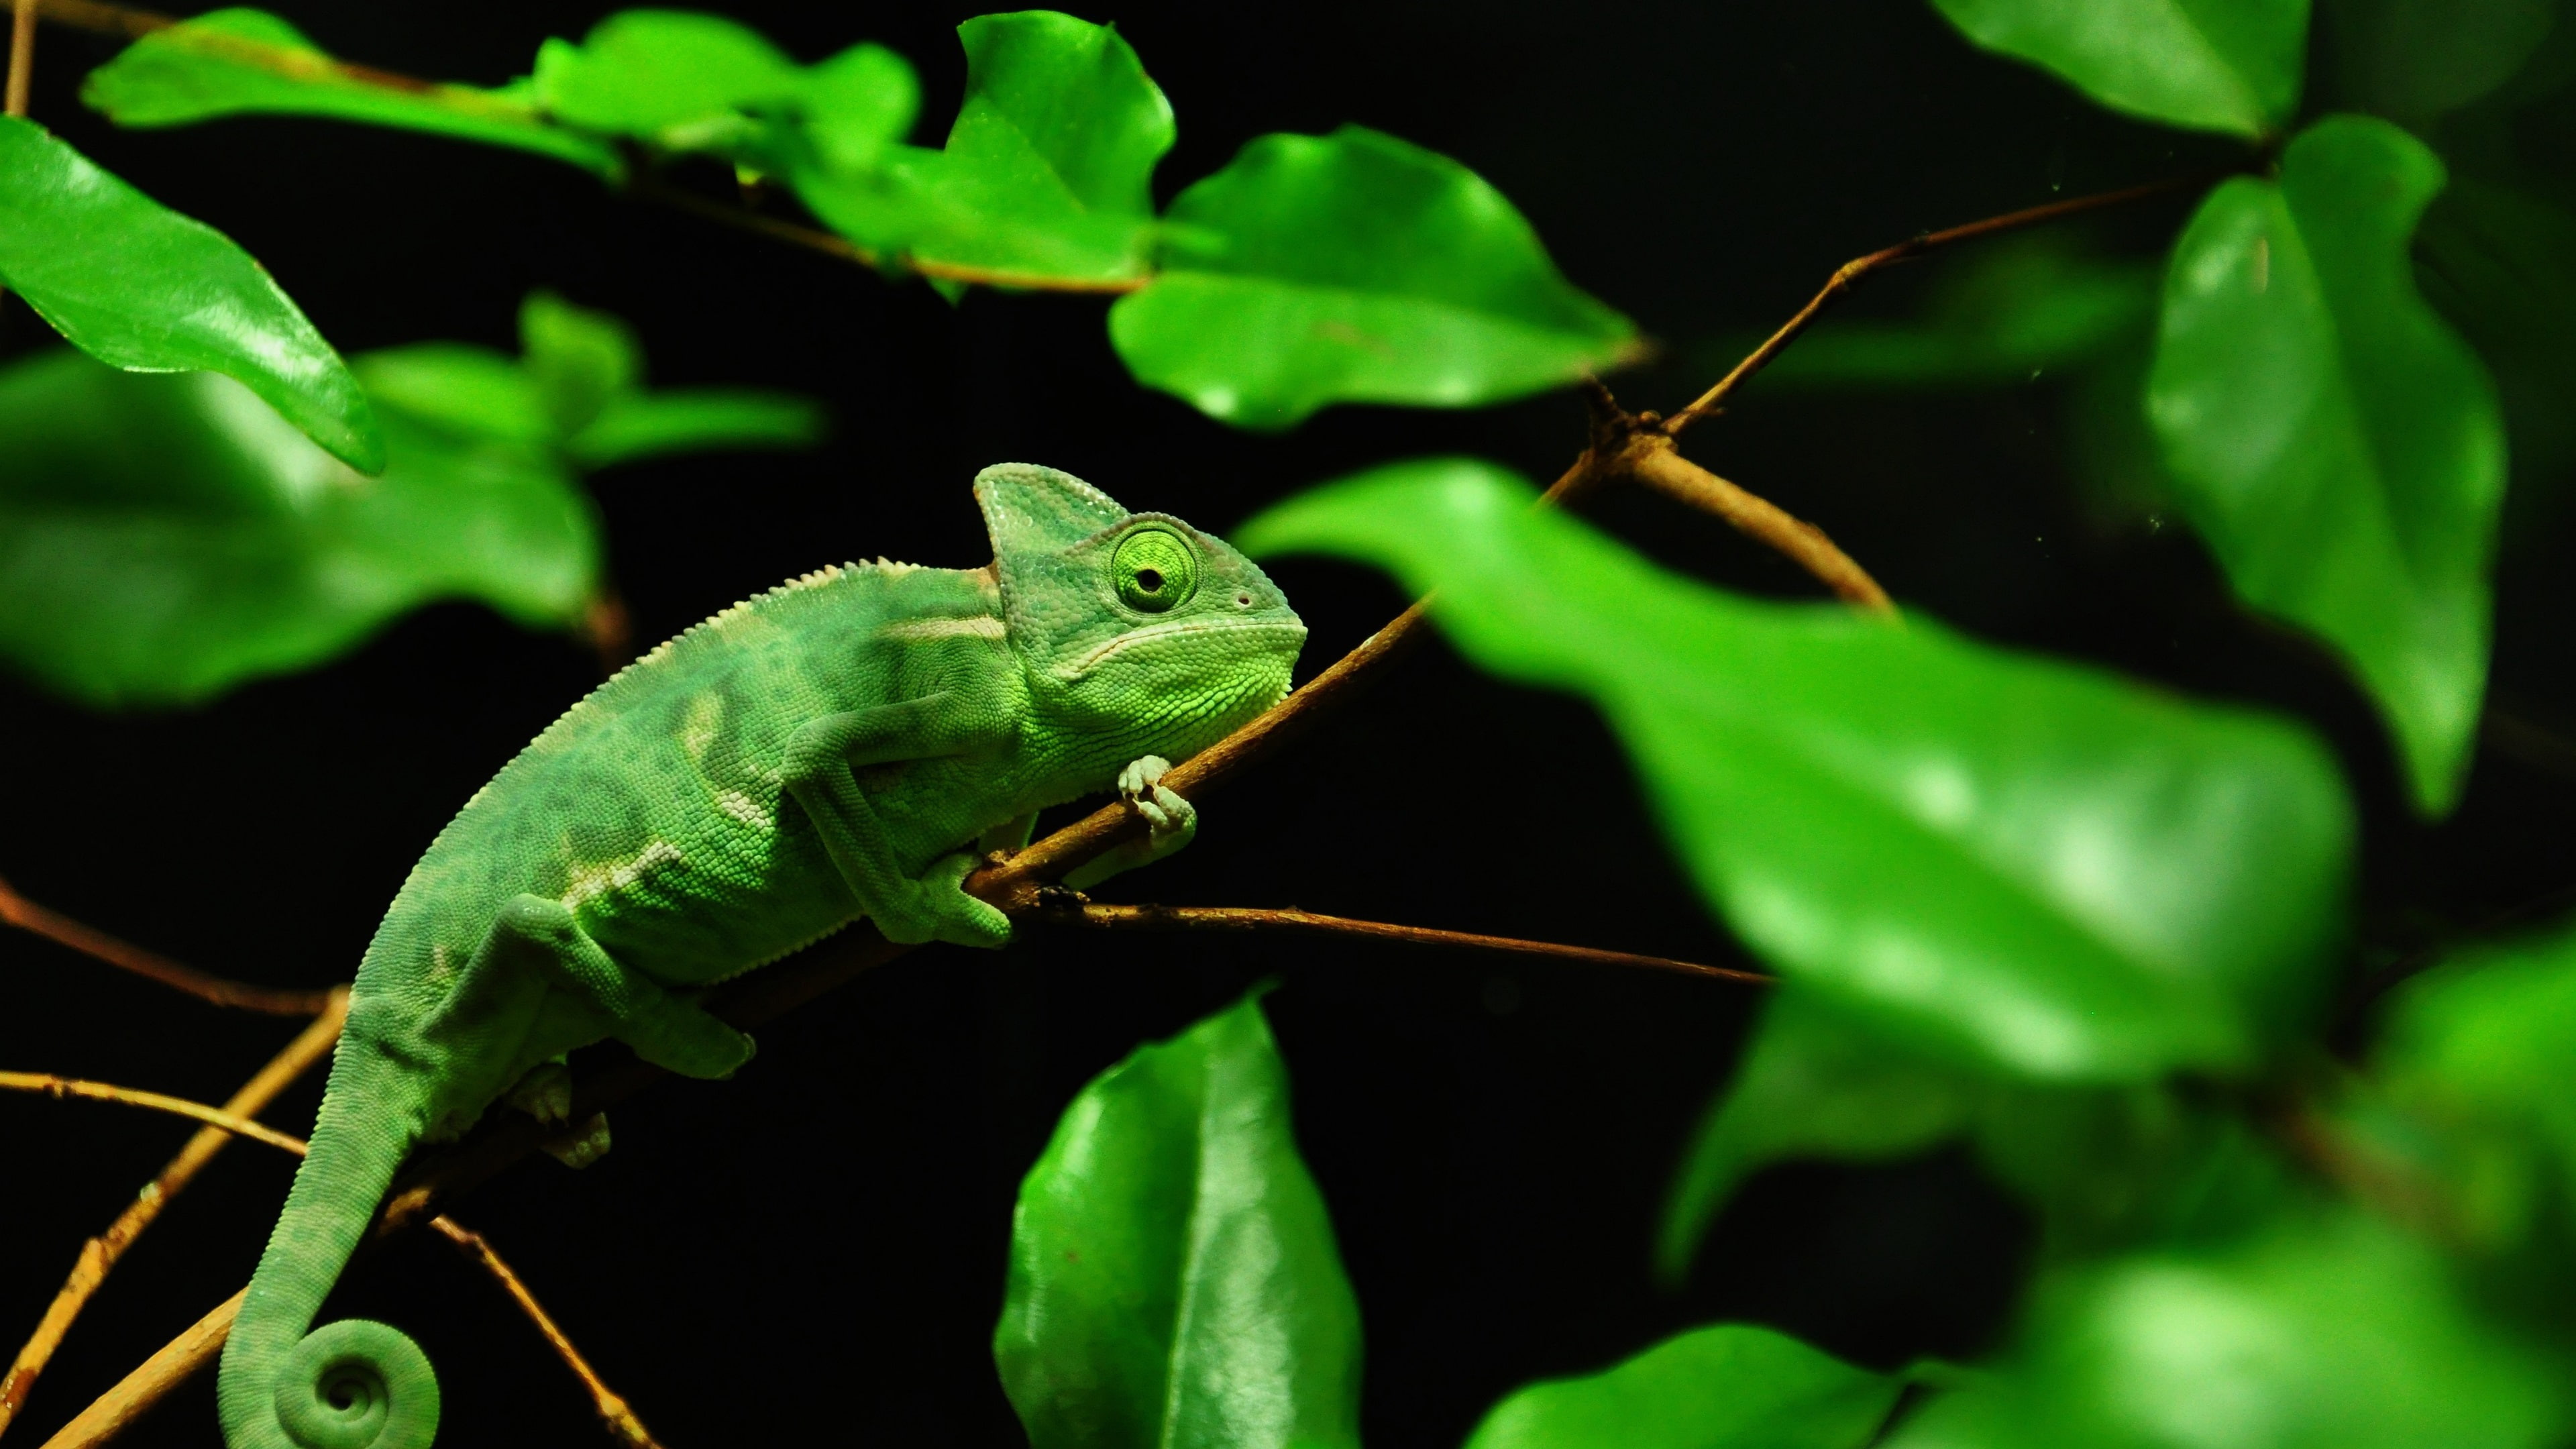 Green chameleon, Madagascar rainforest